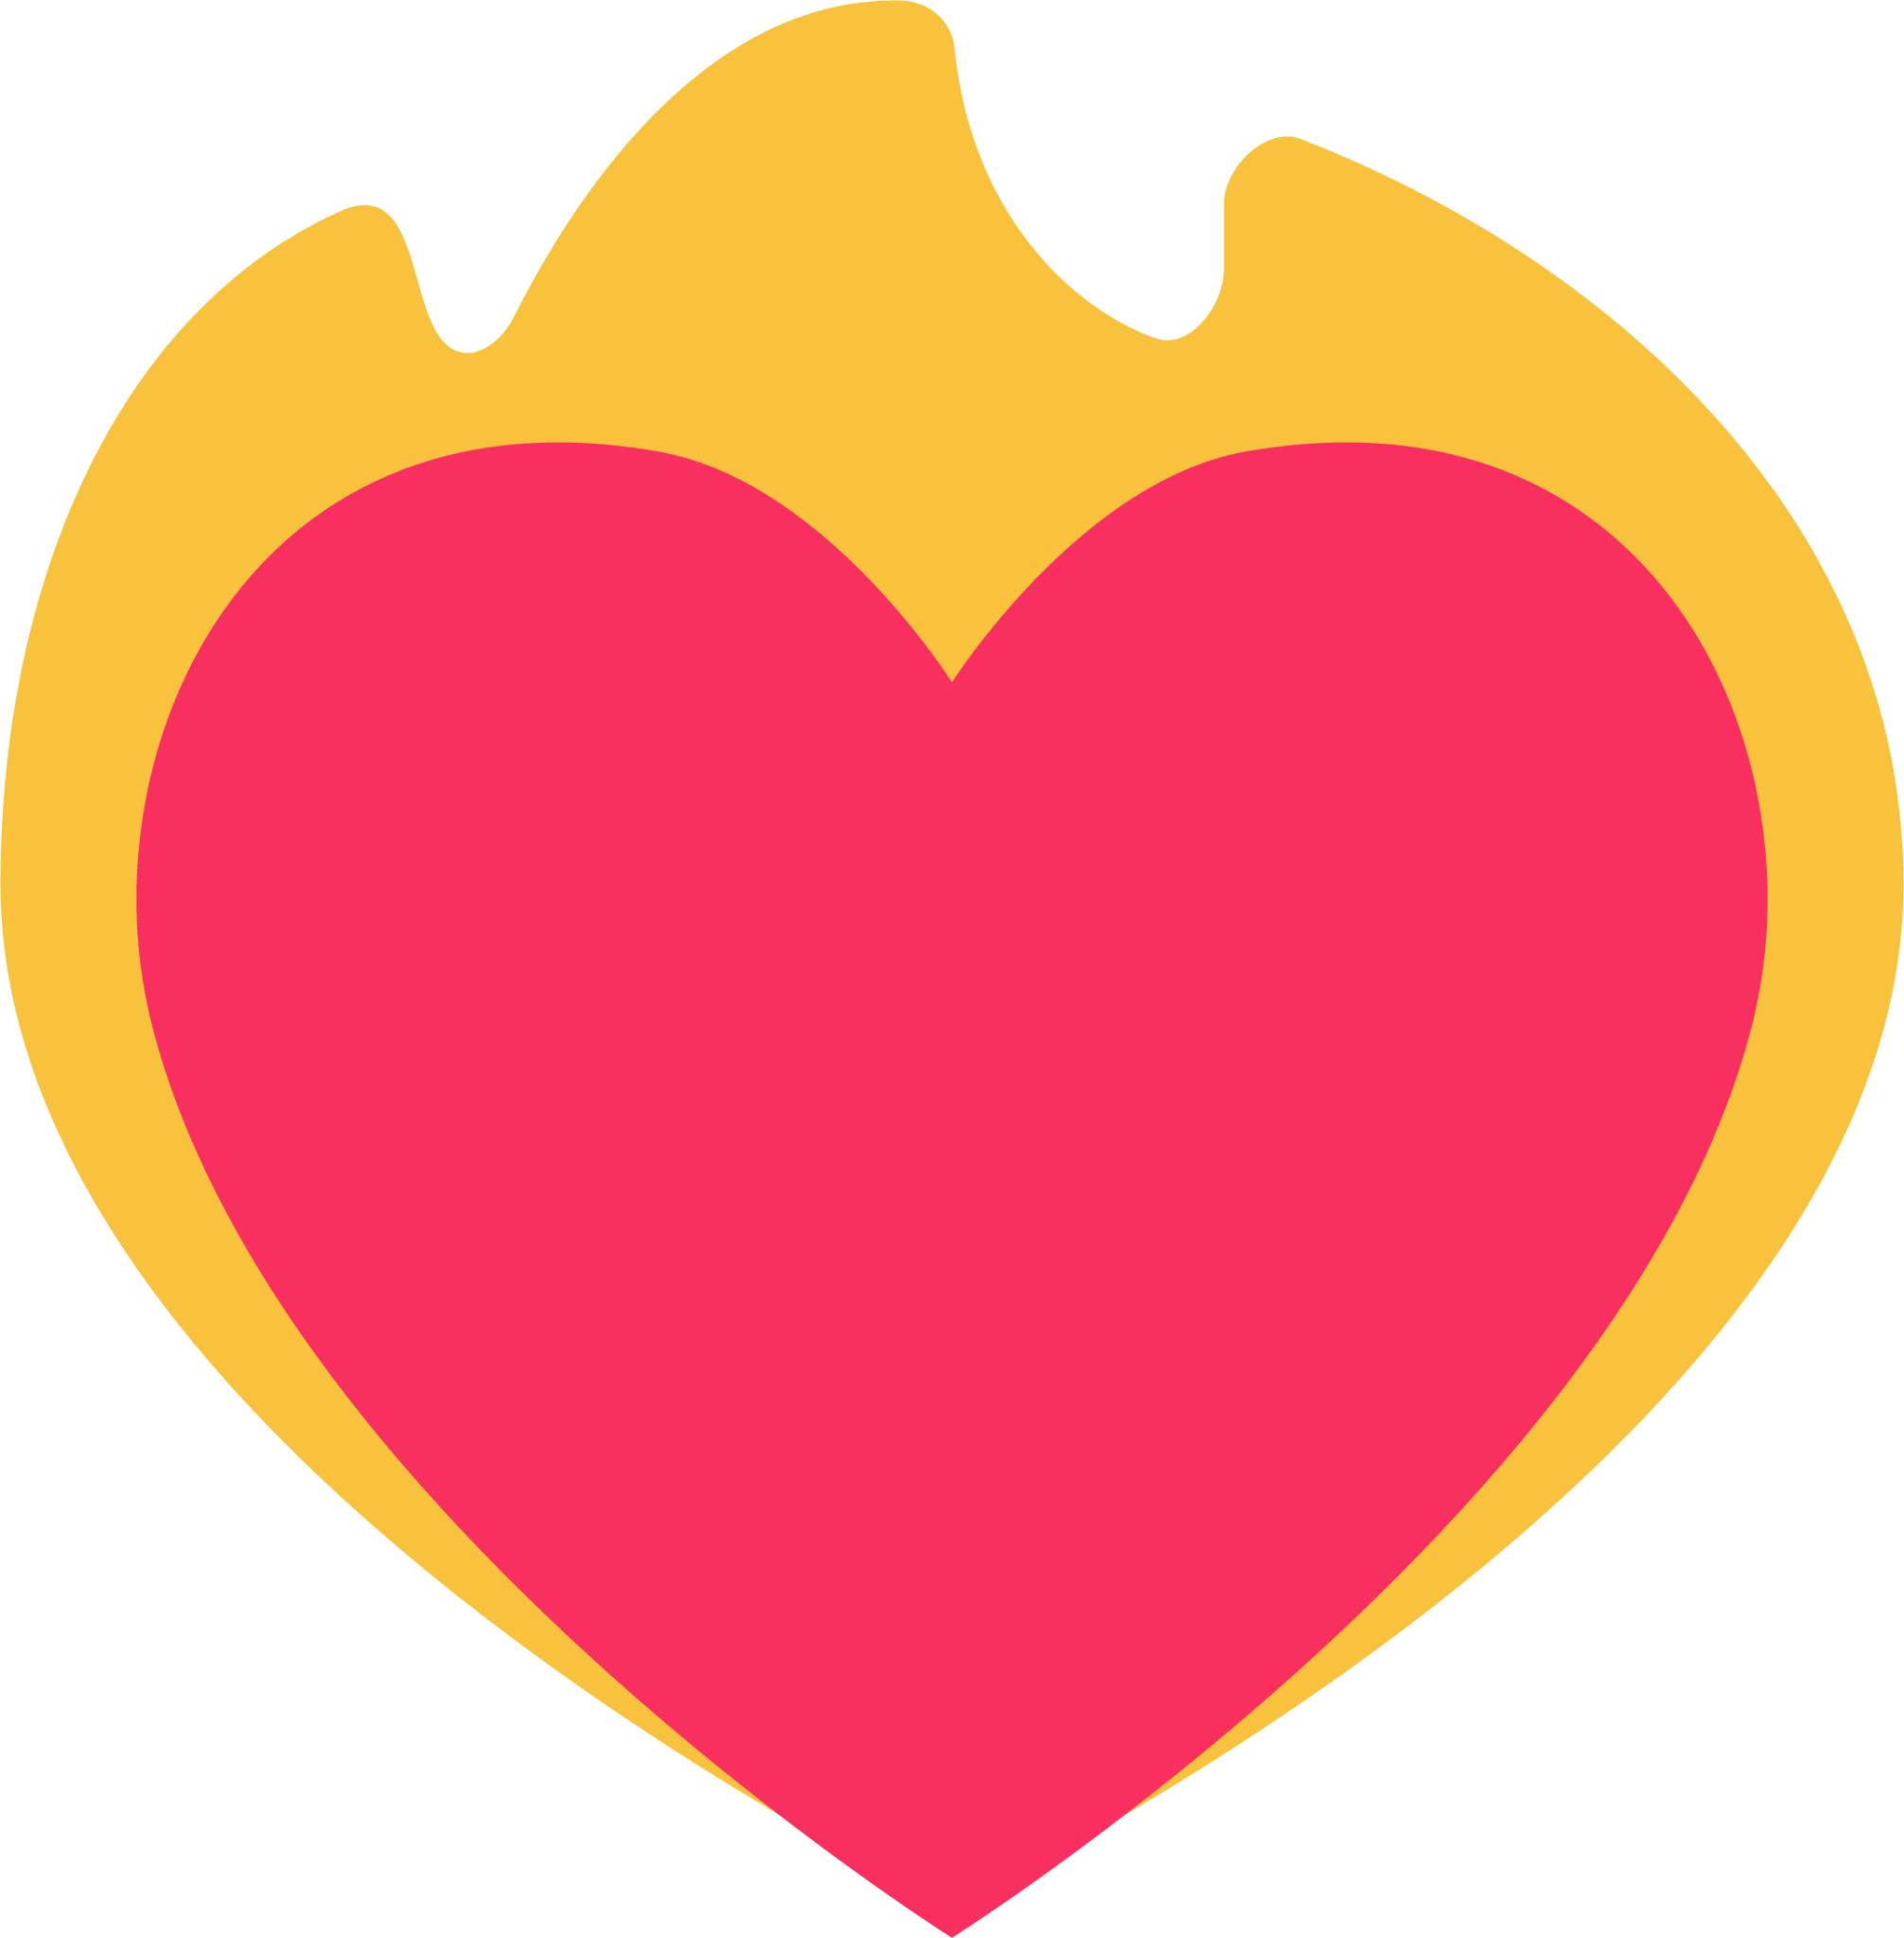 heart on fire emoji